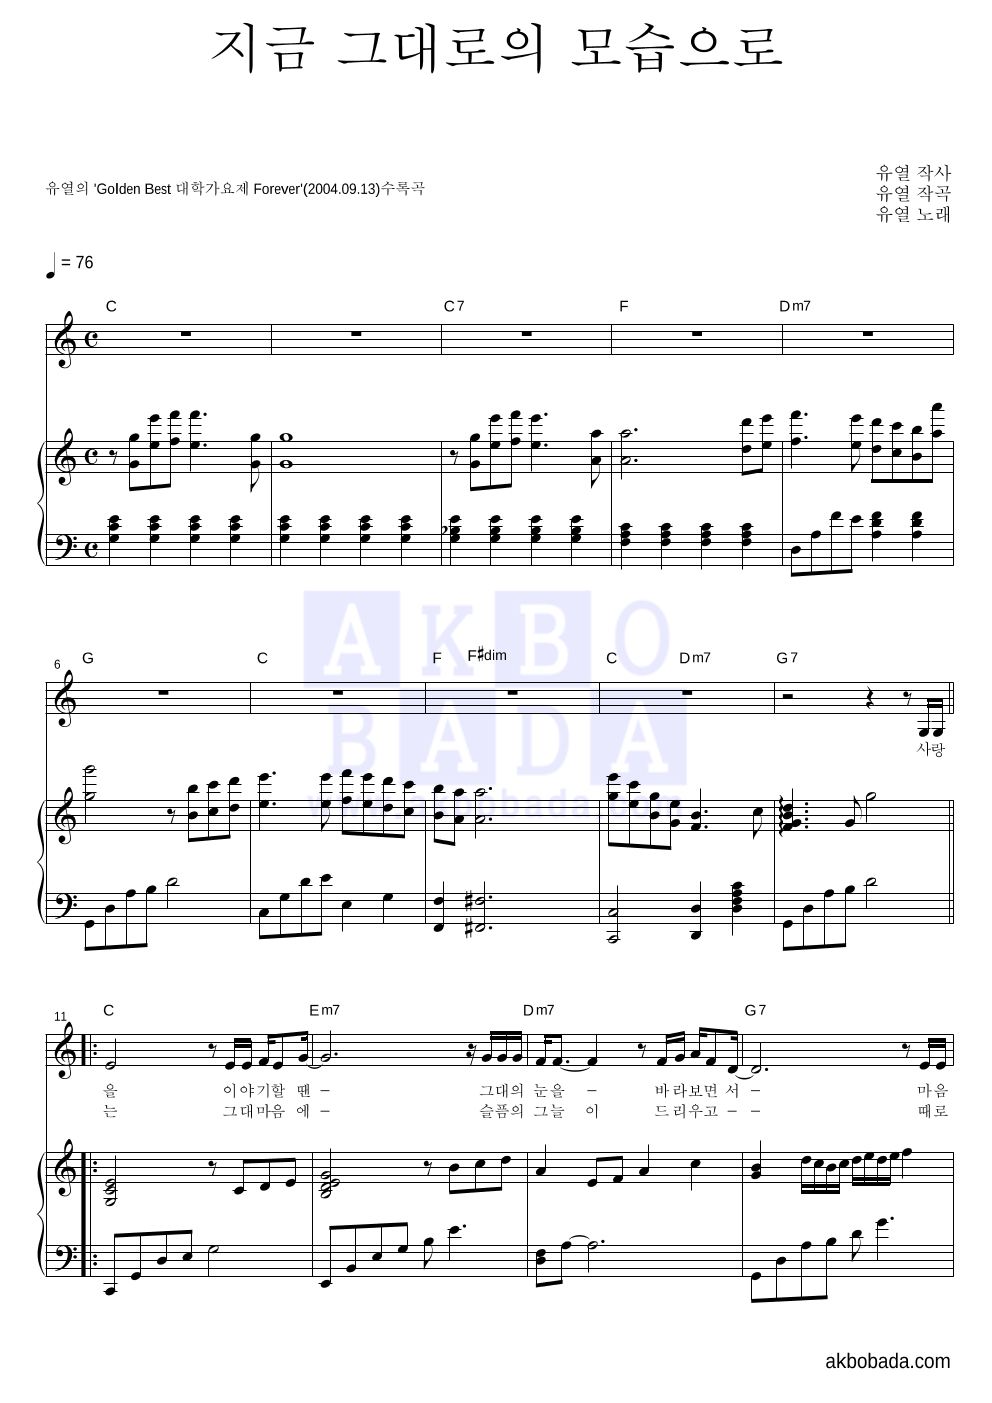 유열 - 지금 그대로의 모습으로 피아노 3단 악보 